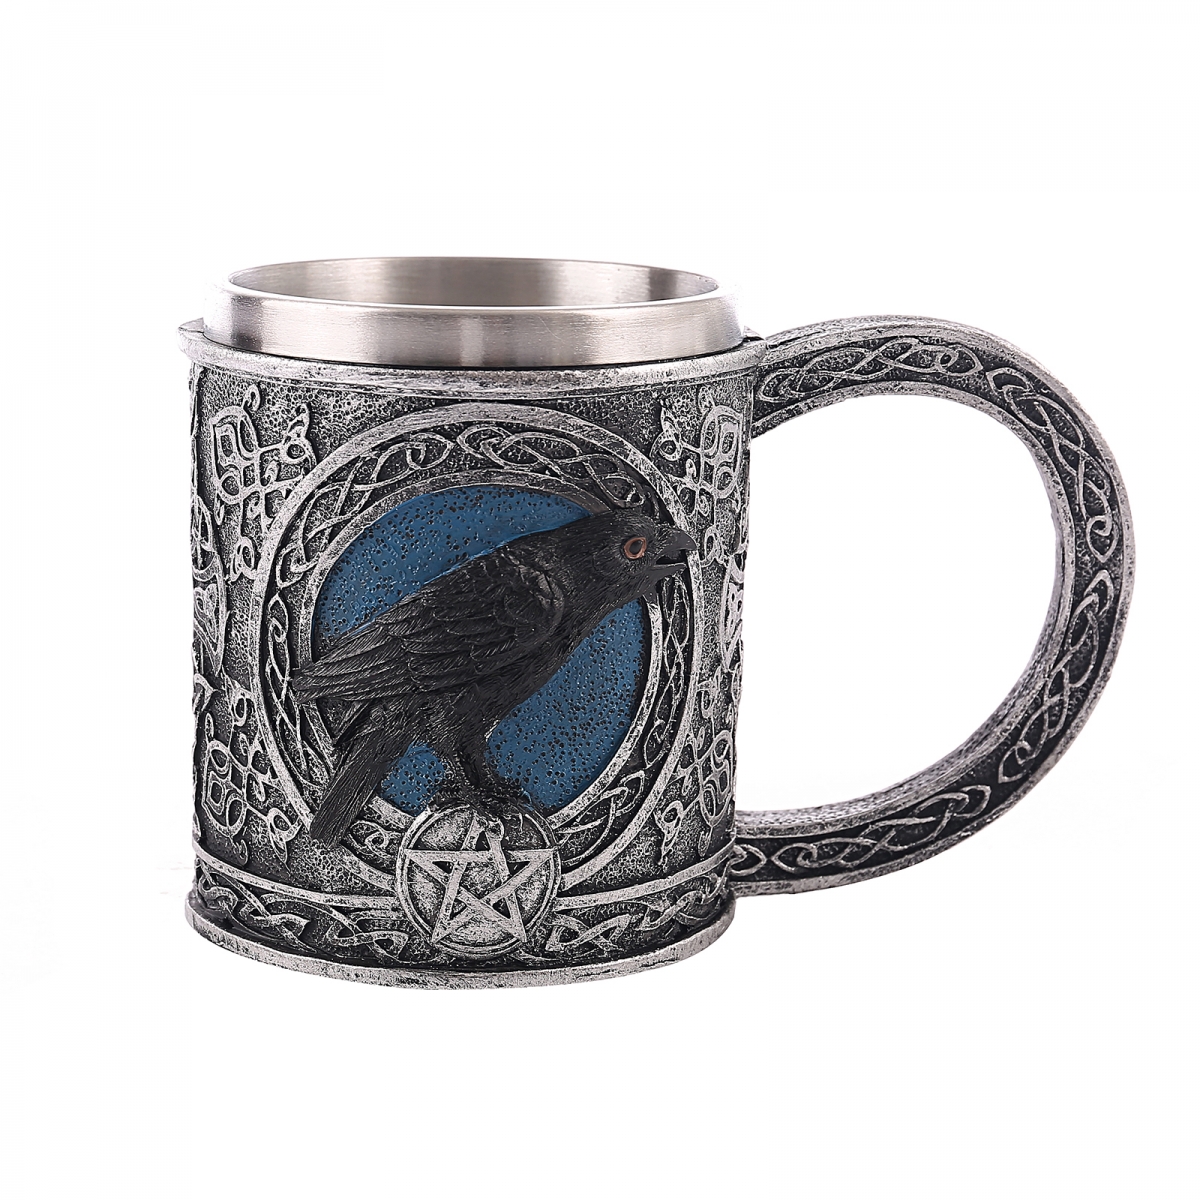 Viking coffee travel mug-NORSECOLLECTION- Viking Jewelry,Viking Necklace,Viking Bracelet,Viking Rings,Viking Mugs,Viking Accessories,Viking Crafts